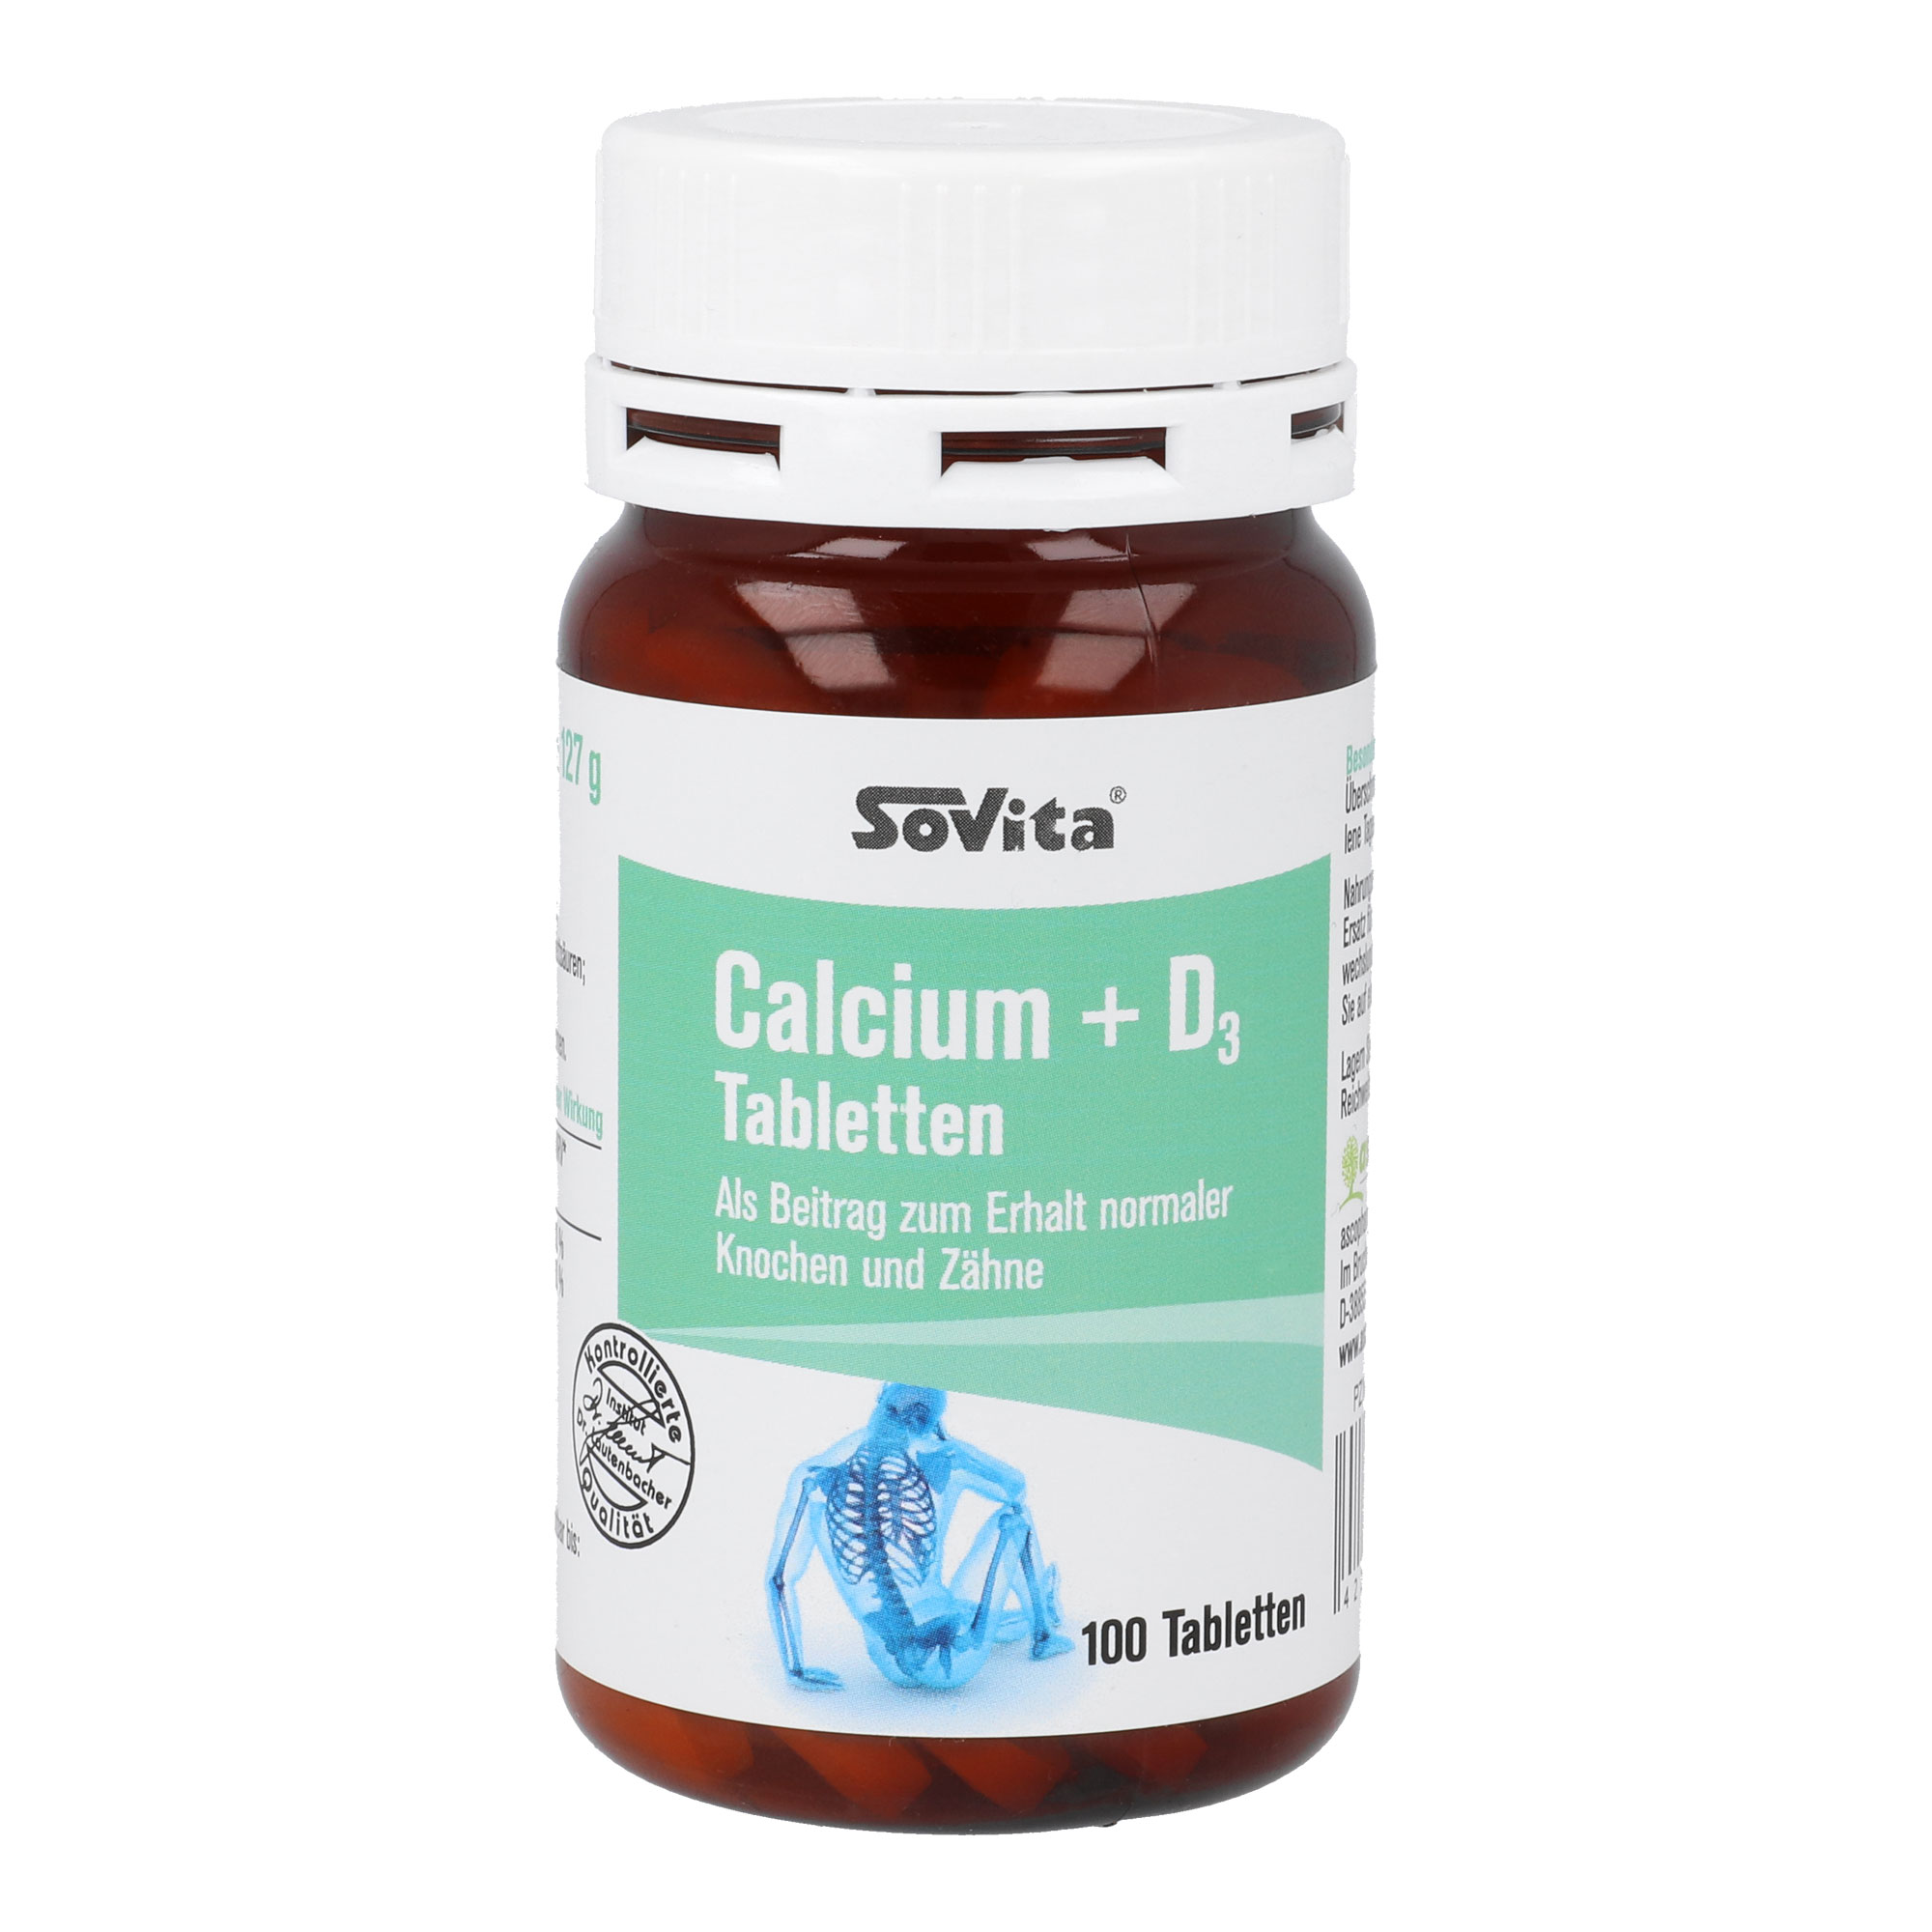 Nahrungsergänzungsmittel mit Calcium und Vitamin D3.